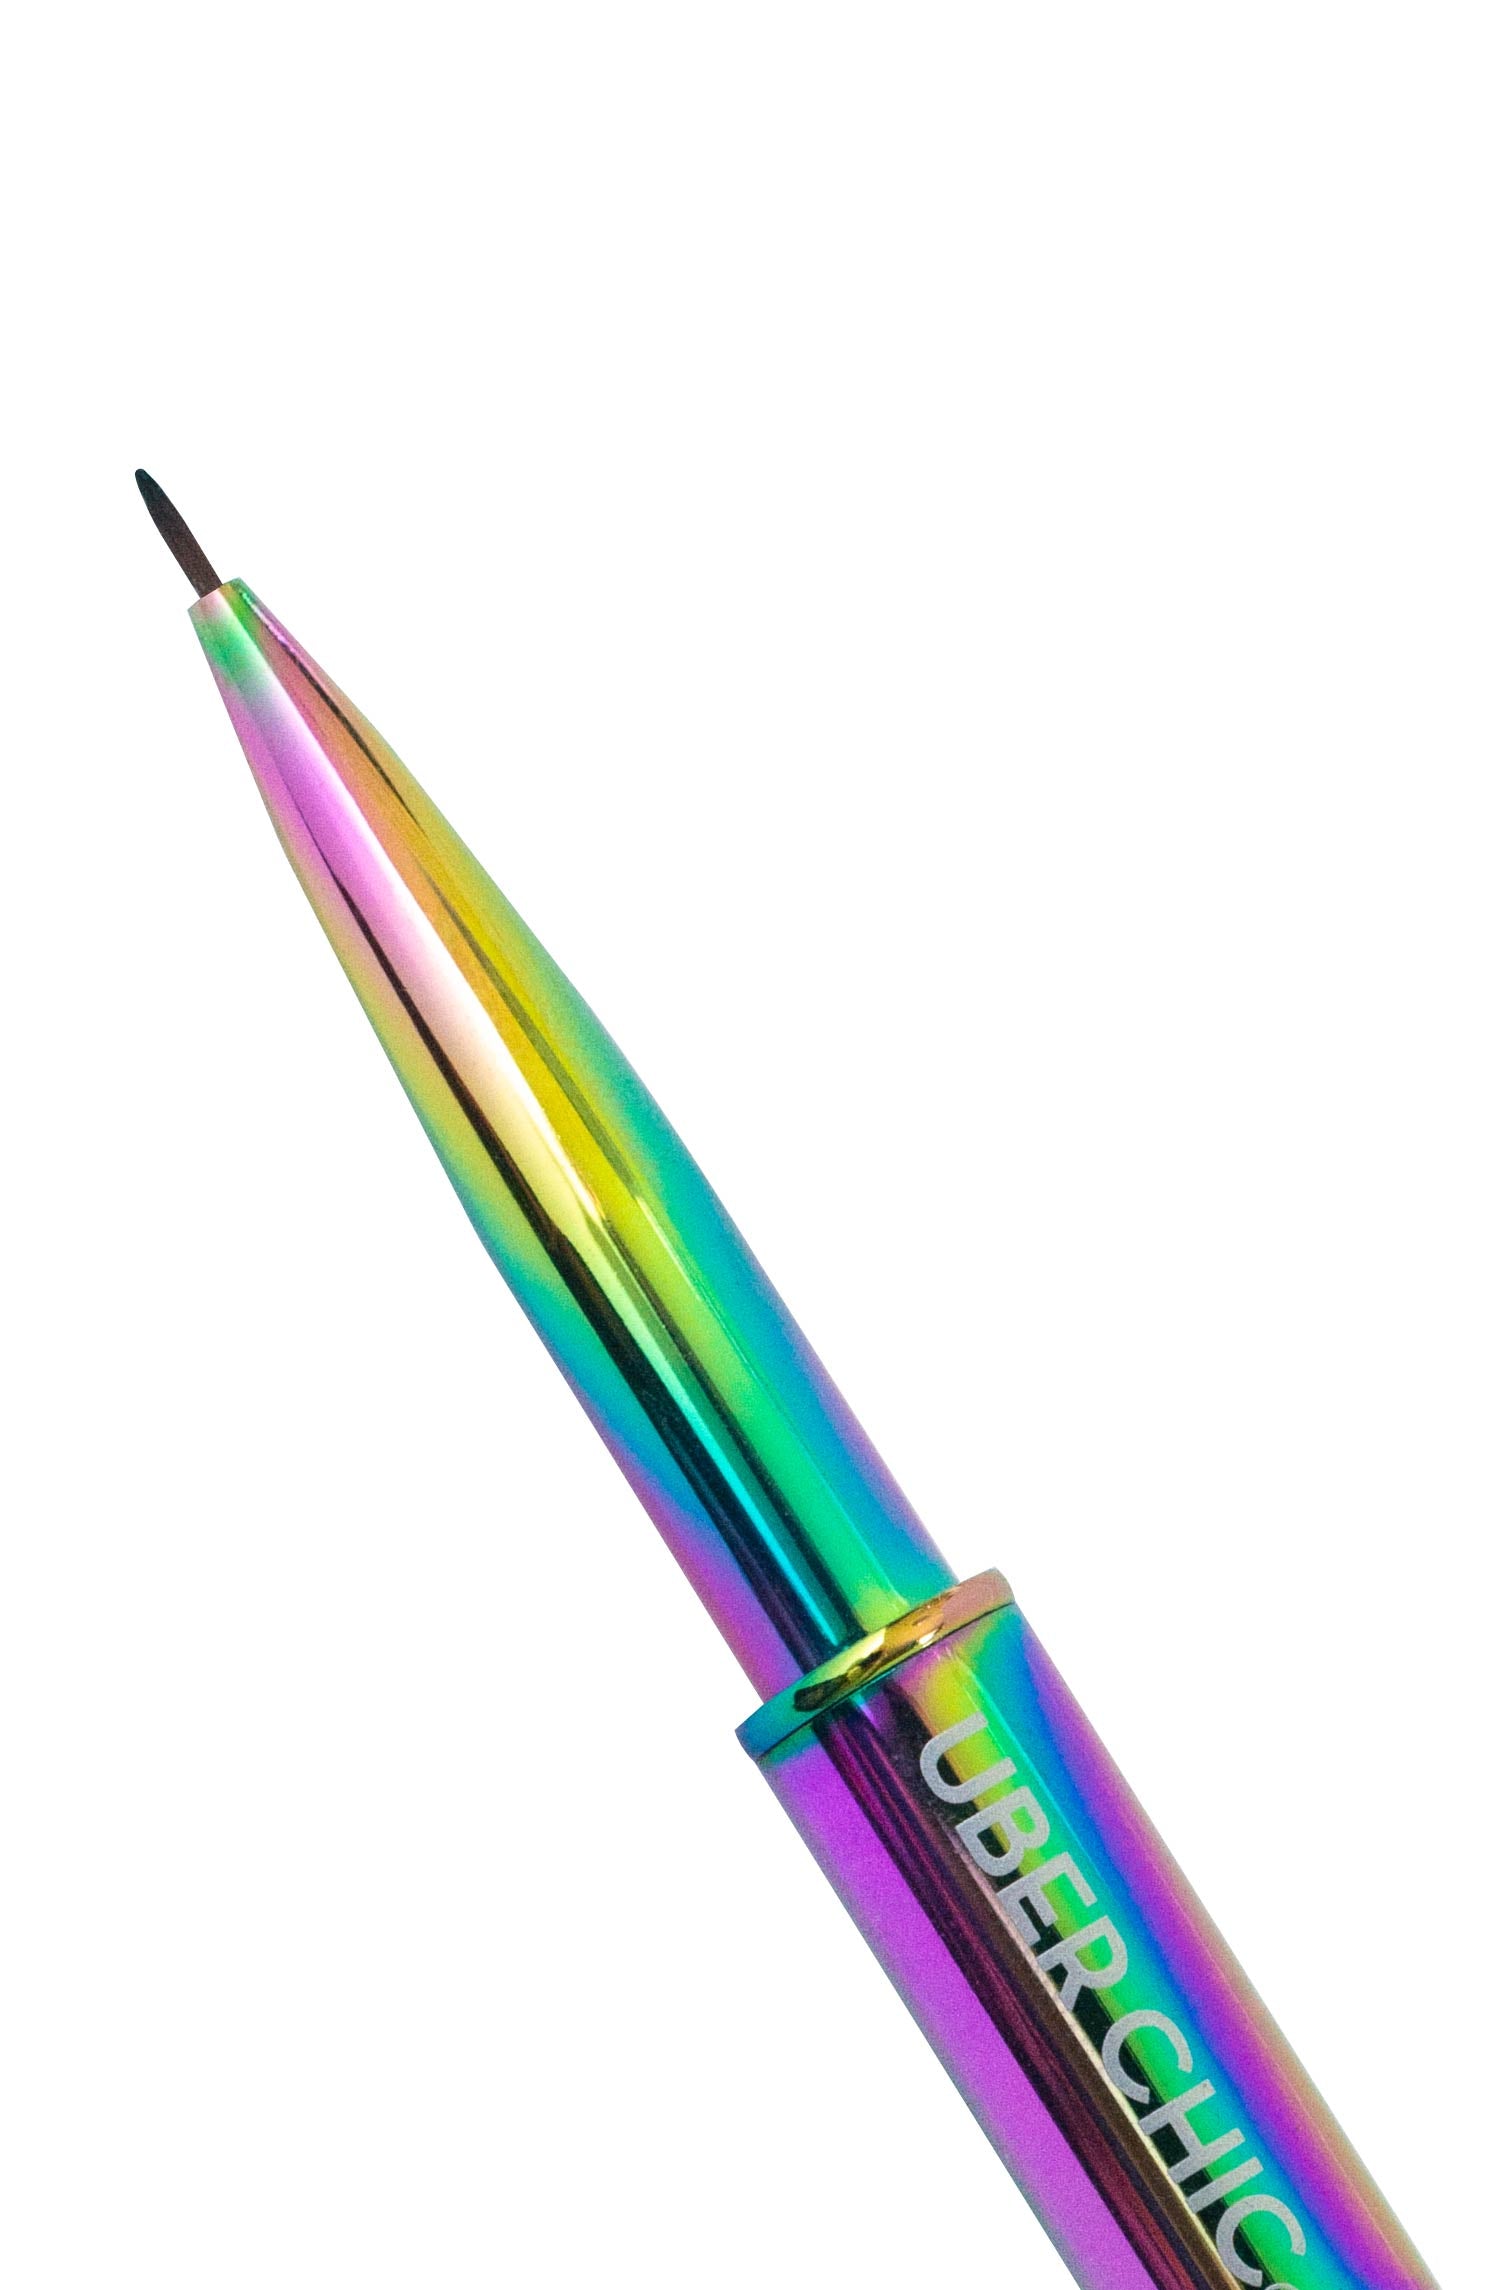 Rainbow Detail Nail Art Brush – UberChic Beauty